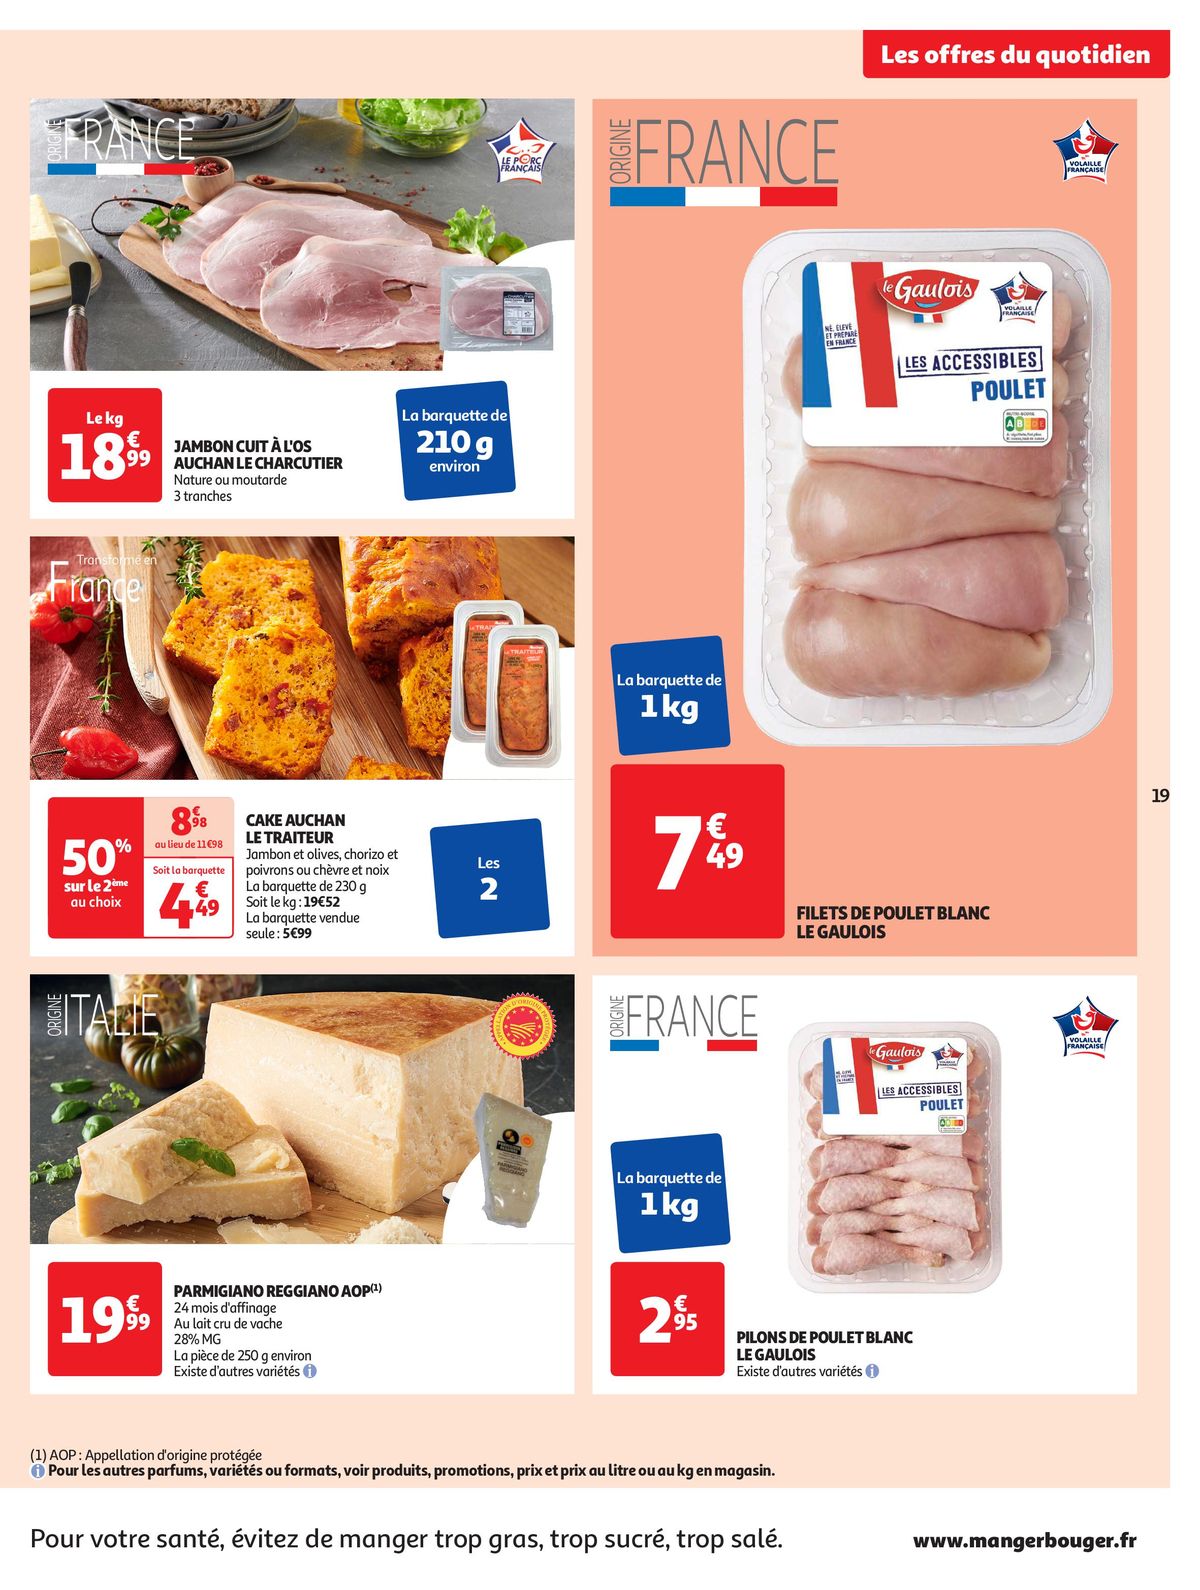 Catalogue Format XXL à prix XXS dans votre supermarché, page 00019